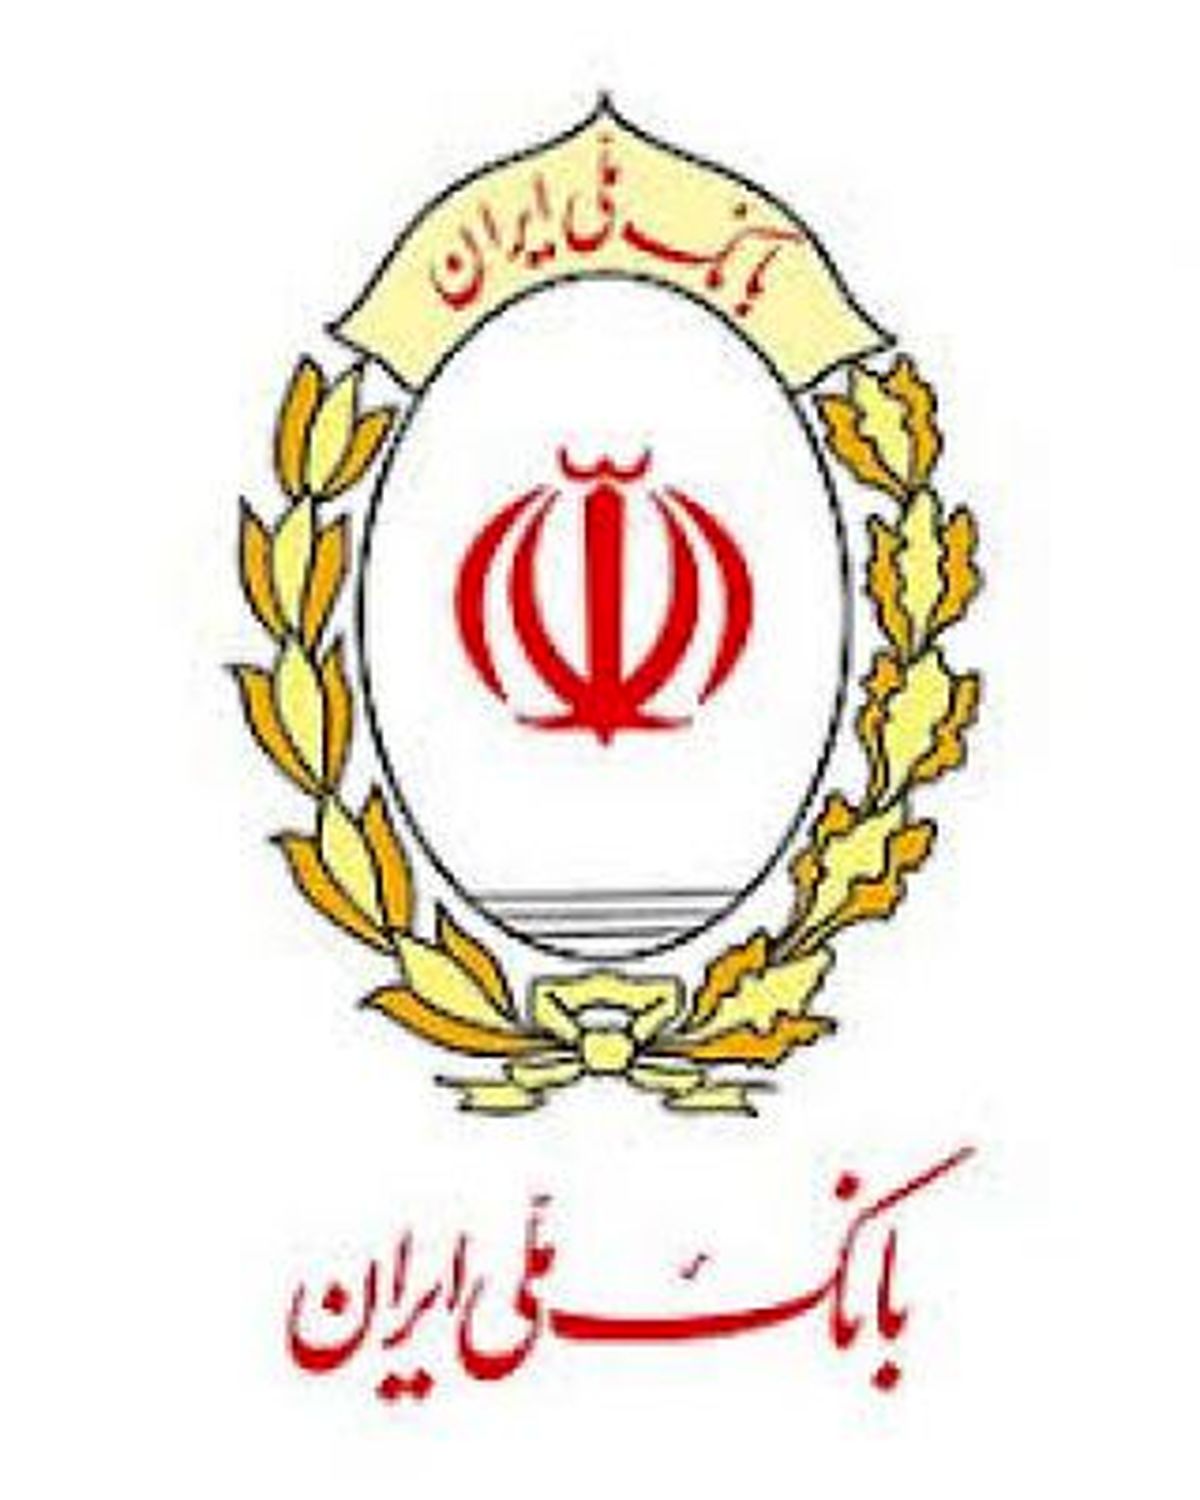 رتبه نخست بانک ملی ایران در پرداخت تسهیلات به مددجویان کمیته امداد امام خمینی (ره)